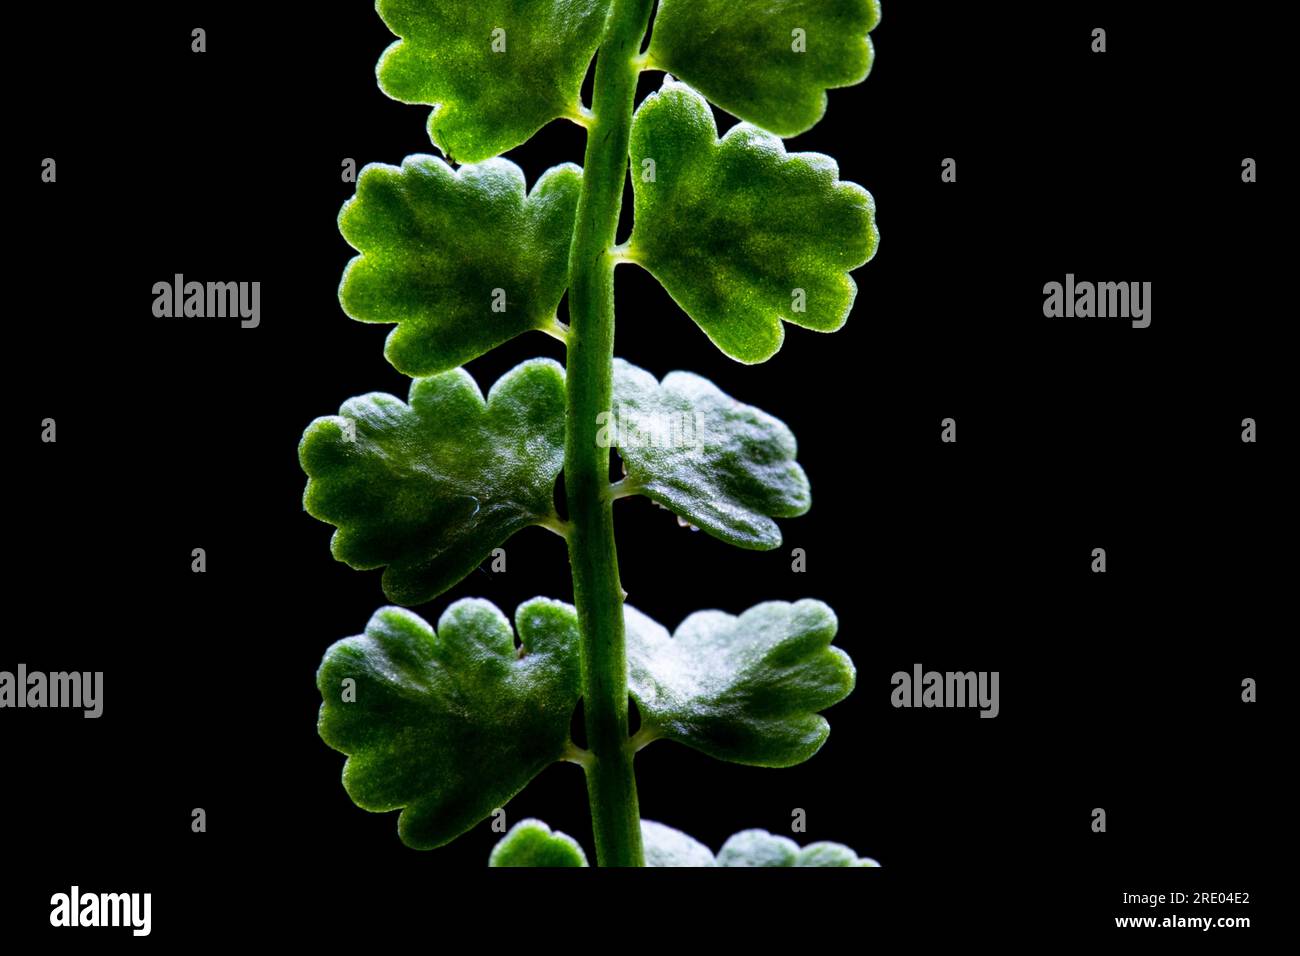 Green spleenwort (Asplenium viride), leaf detail leaflets against black background, Netherlands Stock Photo